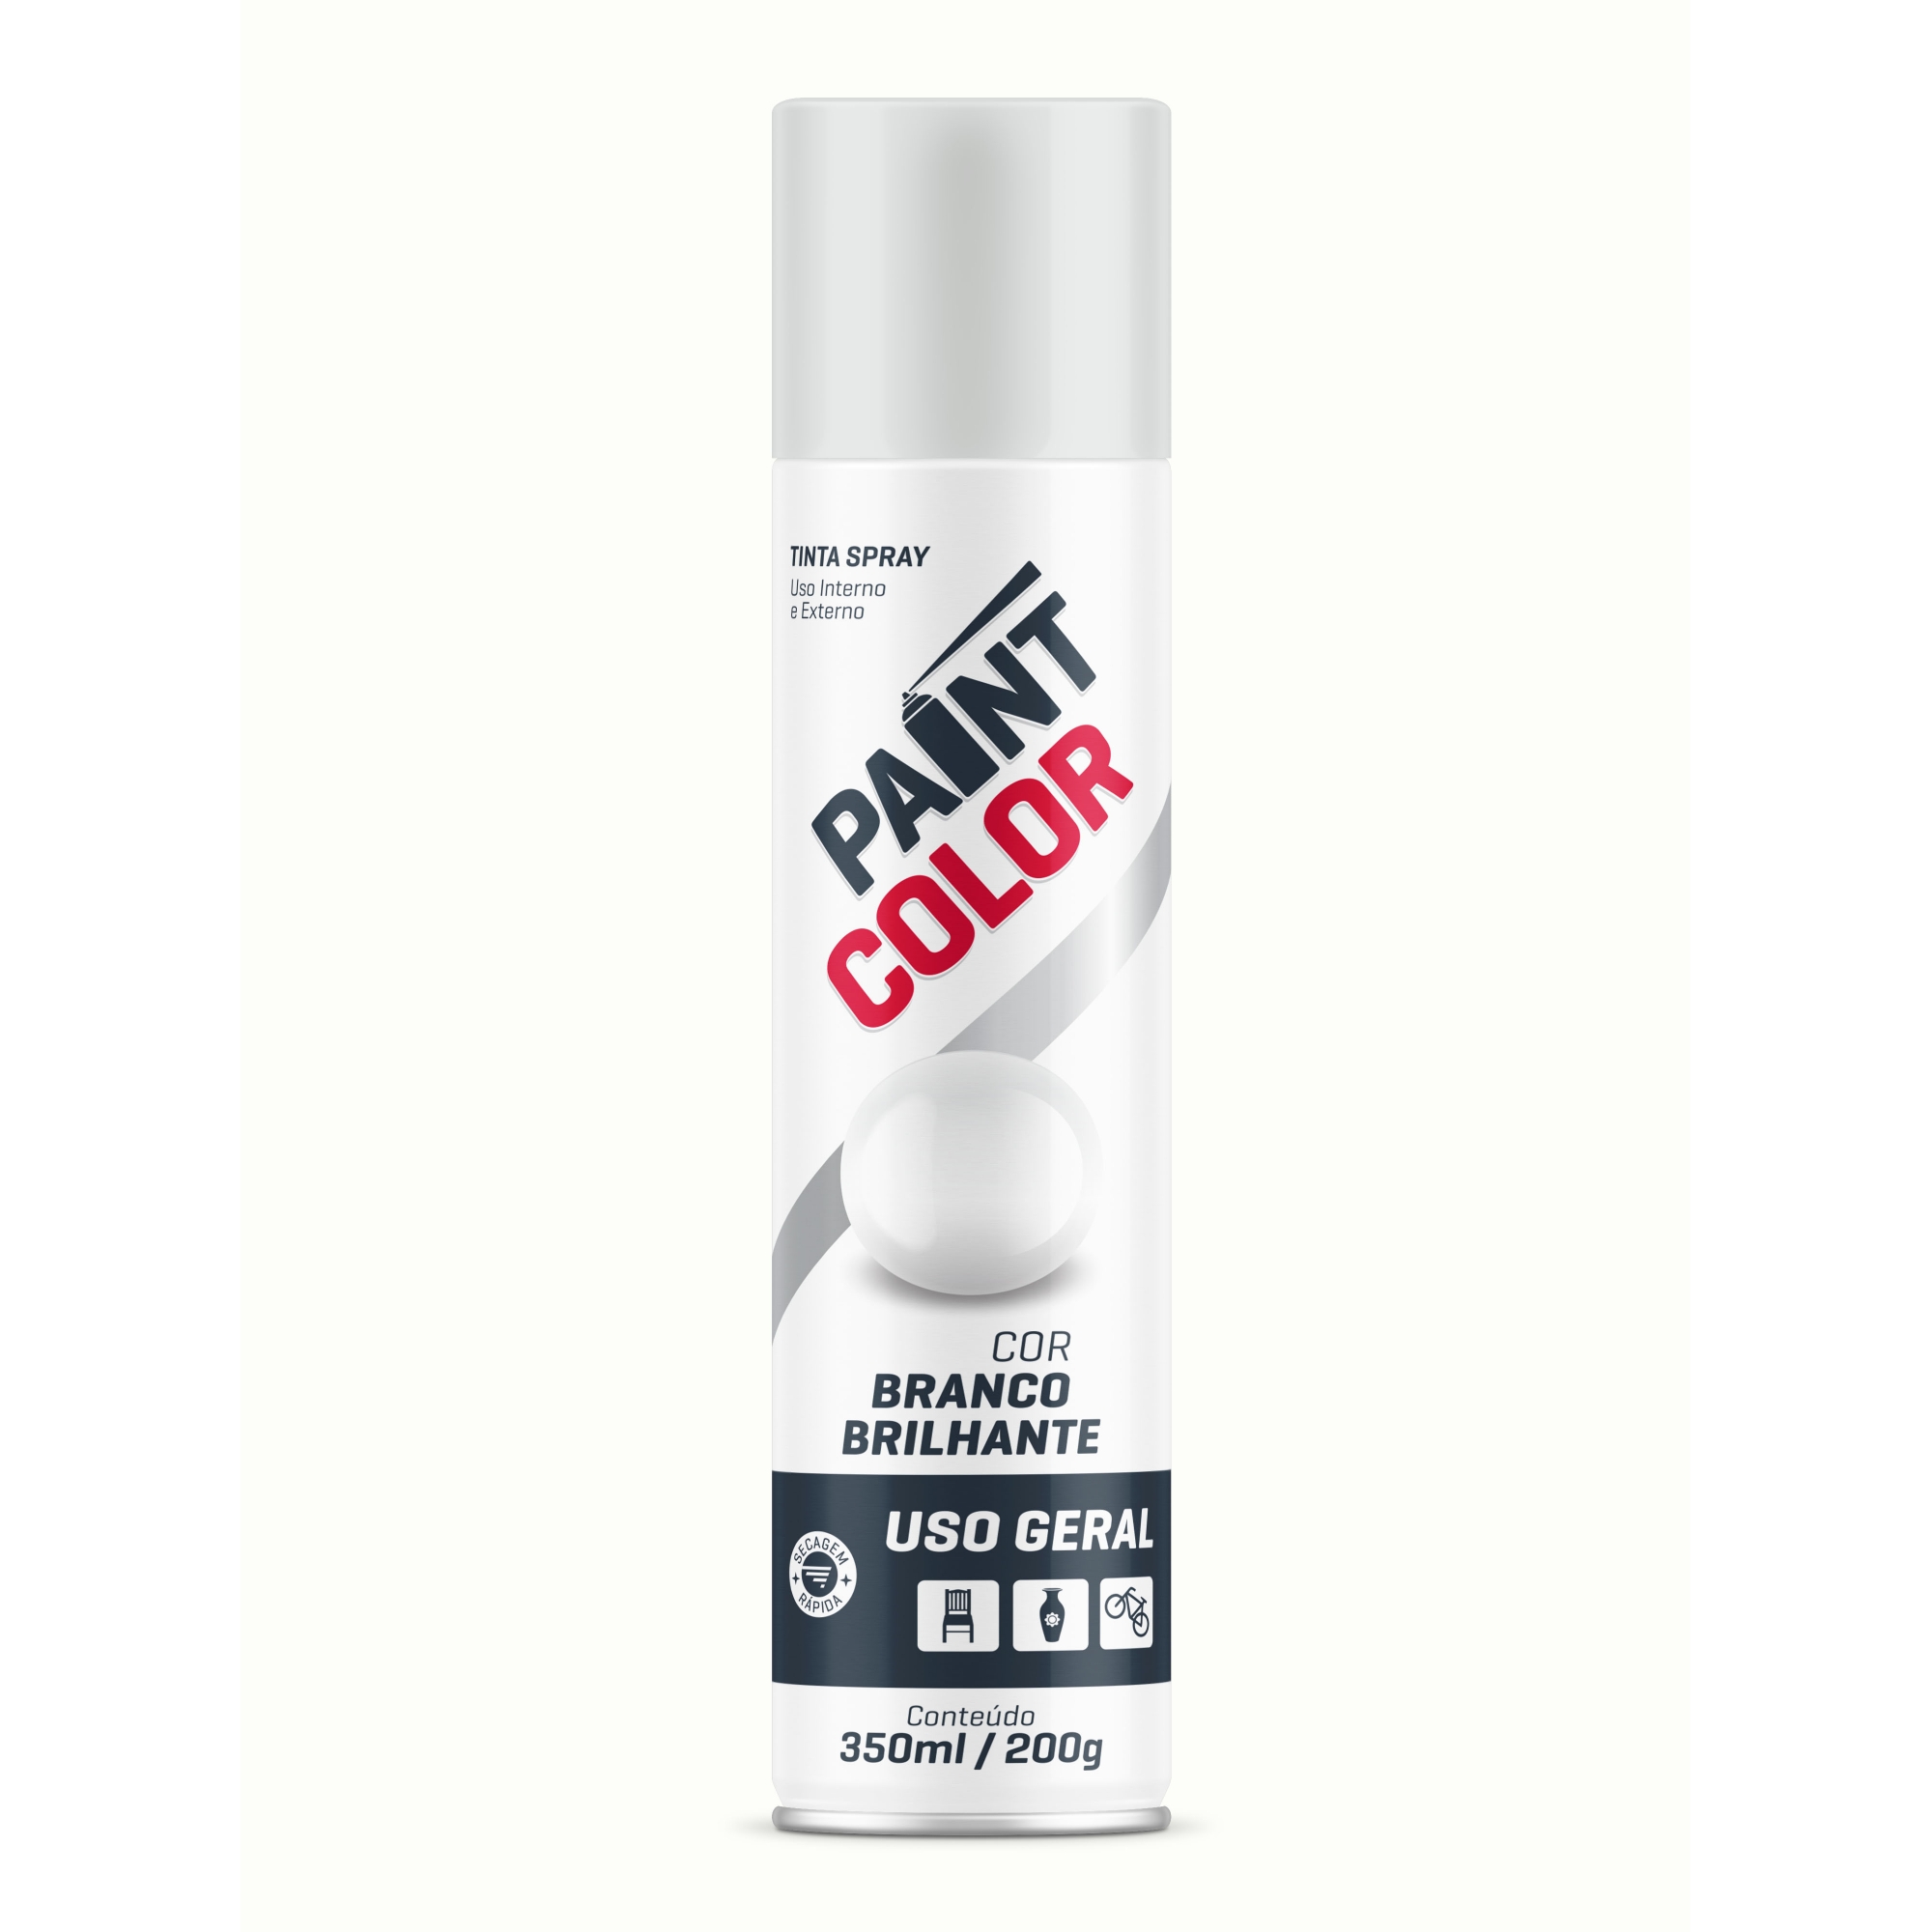 Tinta Spray Uso Geral Branco Brilhante De 350ml / 200g - Paint Color